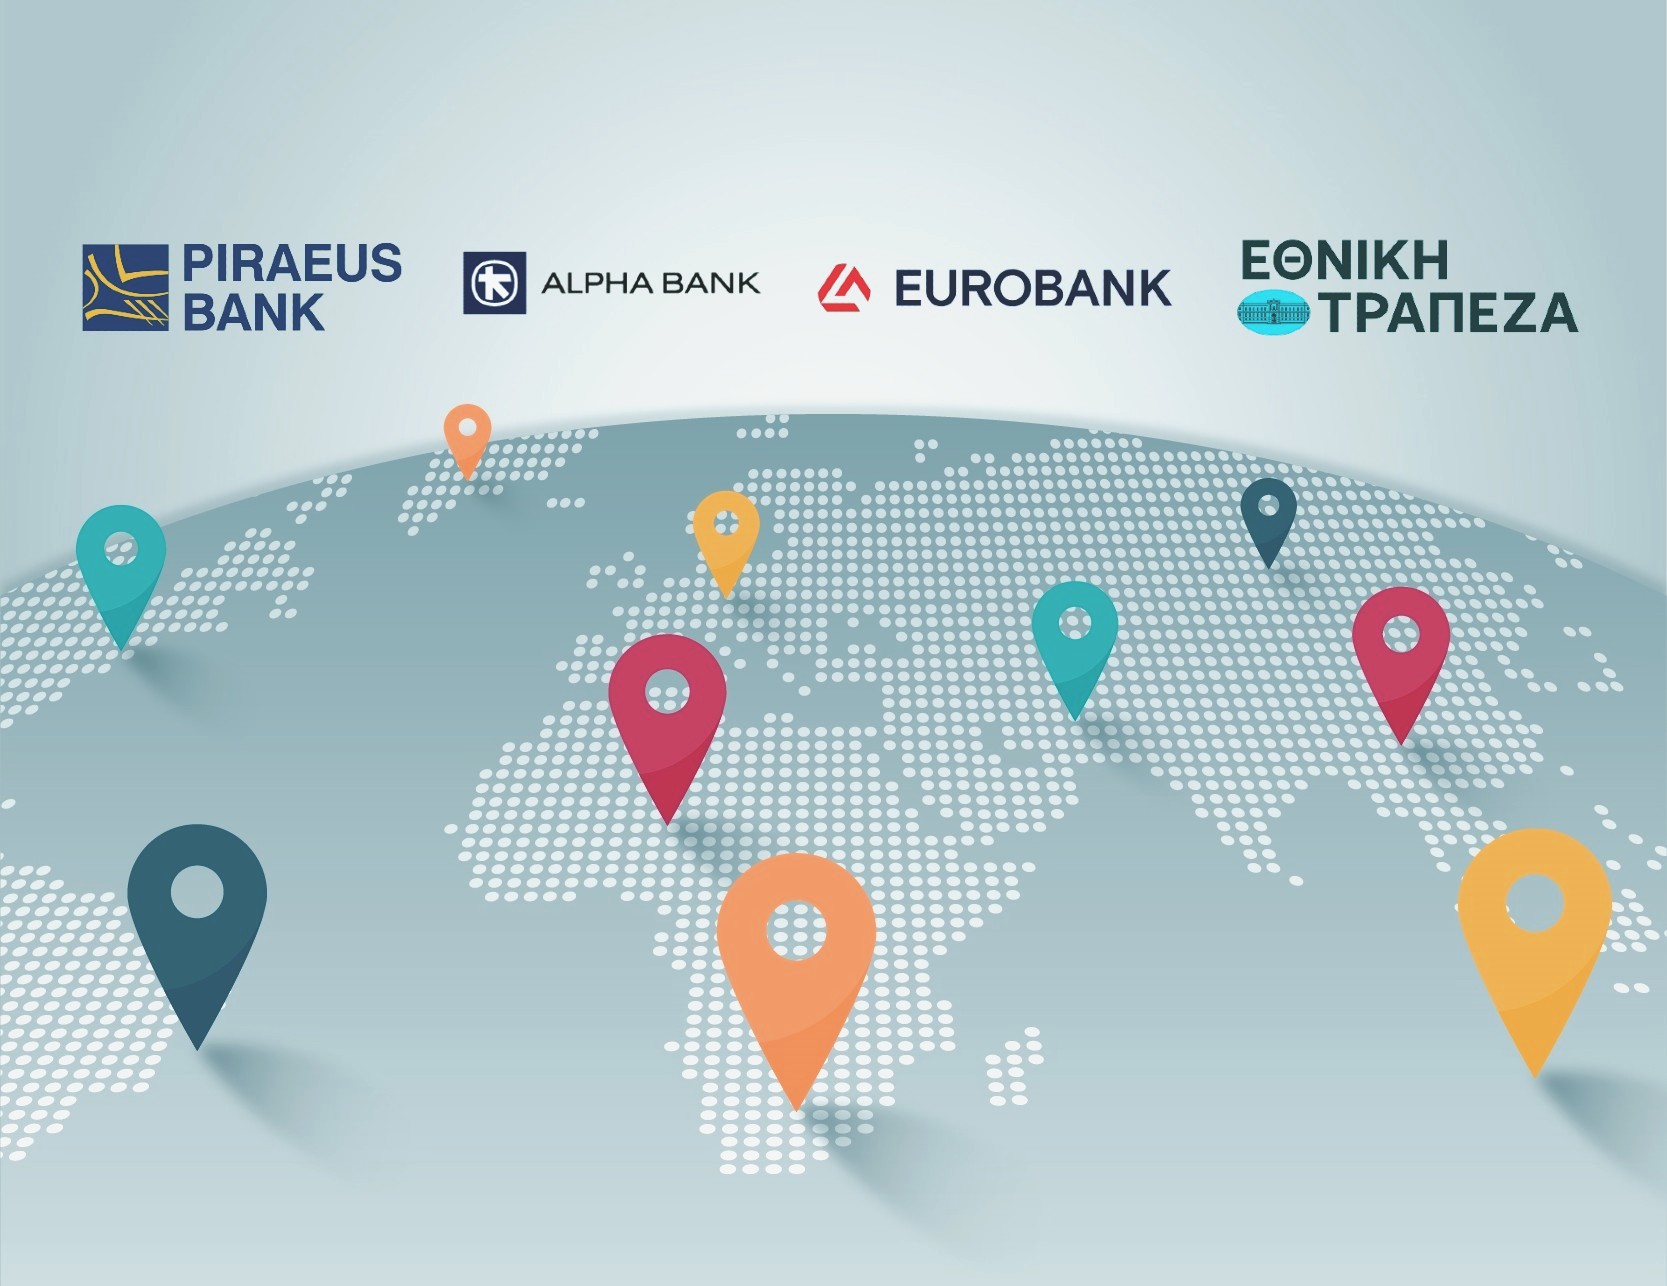 Ξανακοιτάζουν εξαγορές στο εξωτερικό οι Ελληνικές τράπεζες - «Χτενίζει» την Ρουμανία για εξαγορά από κοινού με την UniCredit o CEO της Alpha Bank Β. Ψάλτης – «Η τραπεζική χρειάζεται μέγεθος» δηλώνει ο CEO της Eurobank Φ. Καραβίας που ταξιδεύει συνεχώς σε Κύπρο, Μ. Ανατολή, Αραβικά Εμιράτα και Ινδία